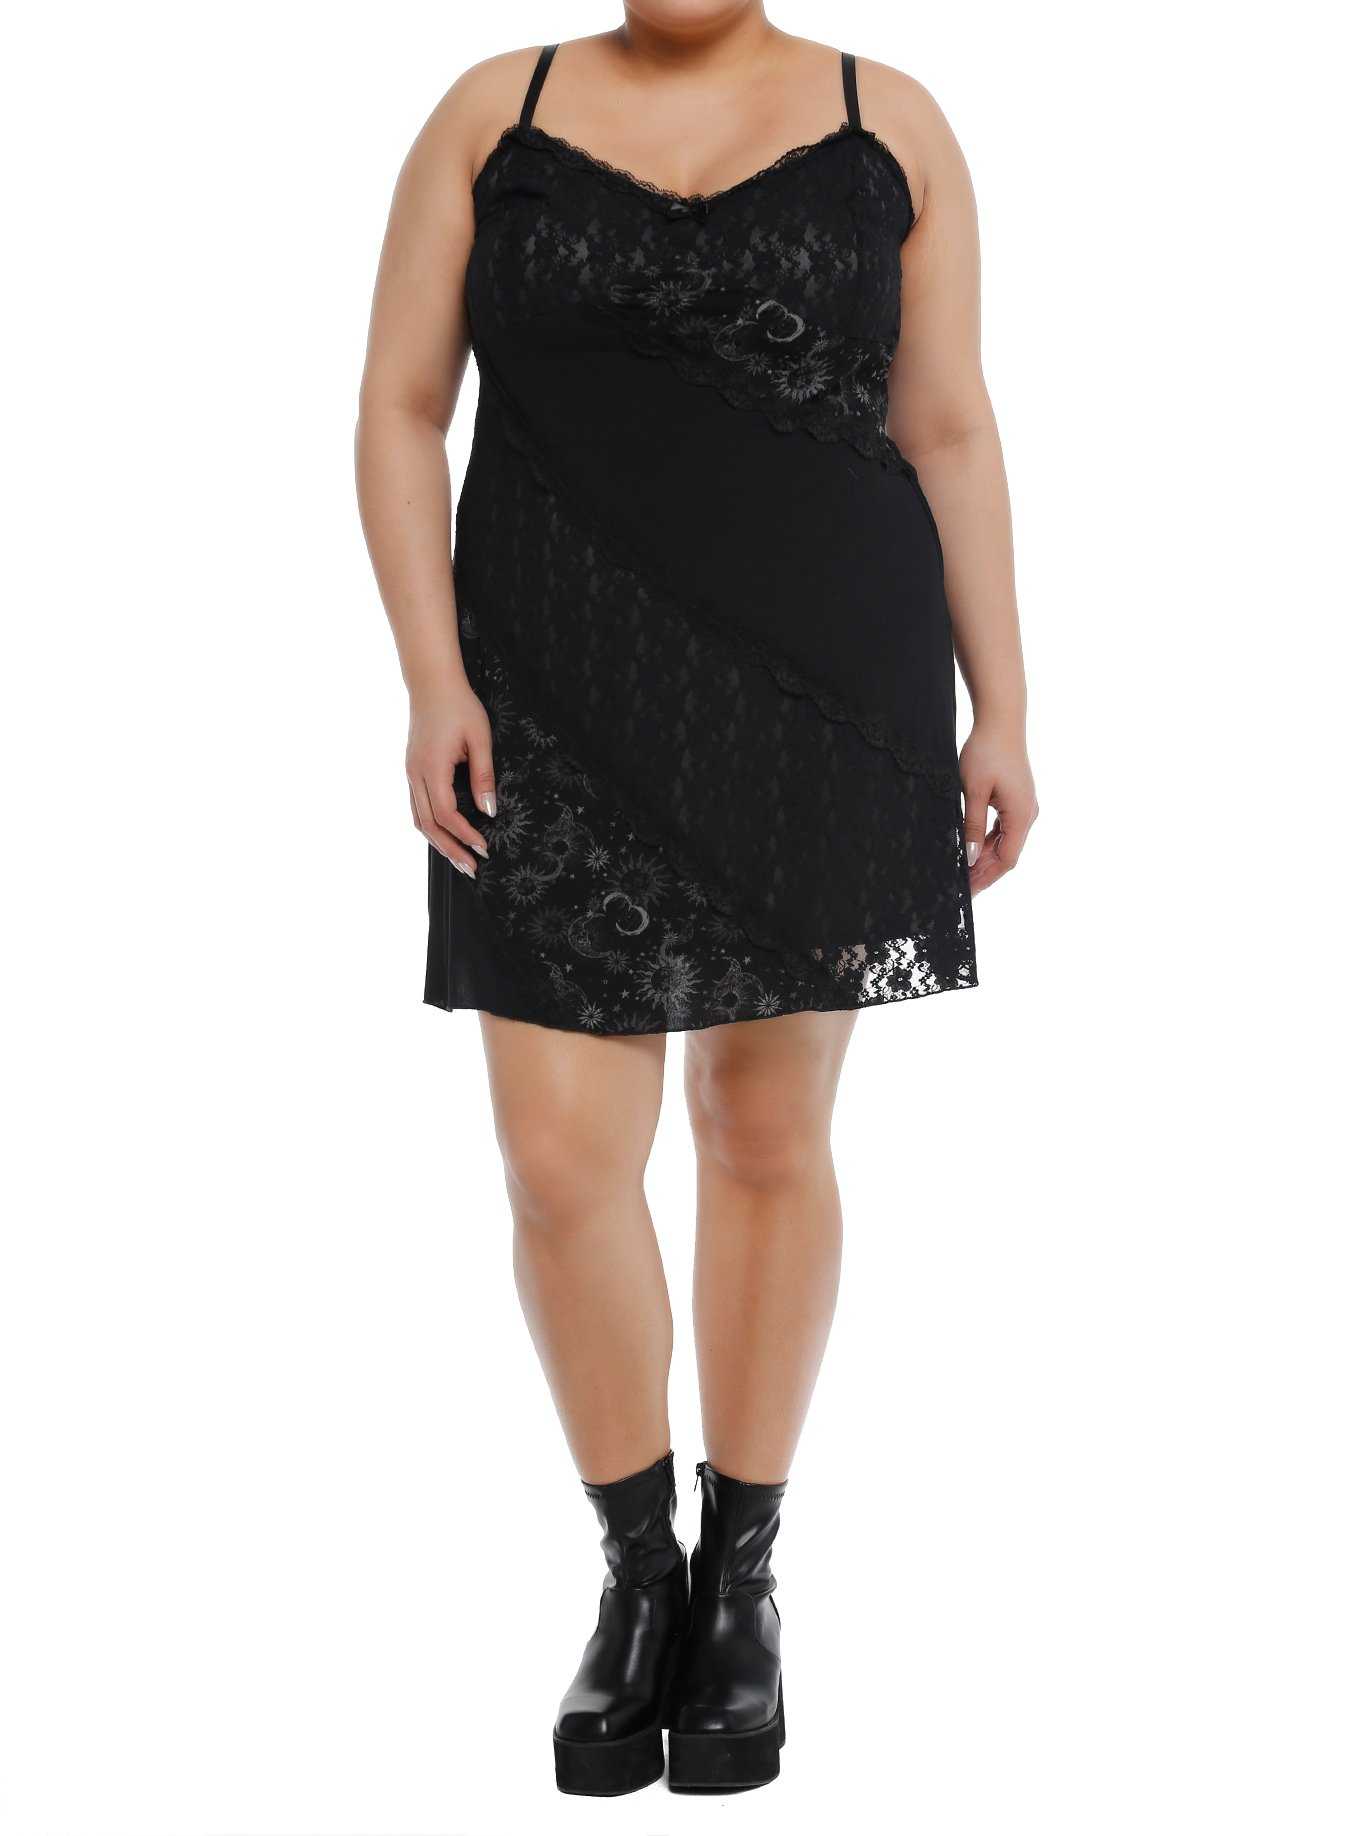 Black Fishnet Dress Plus Size, Hot Topic